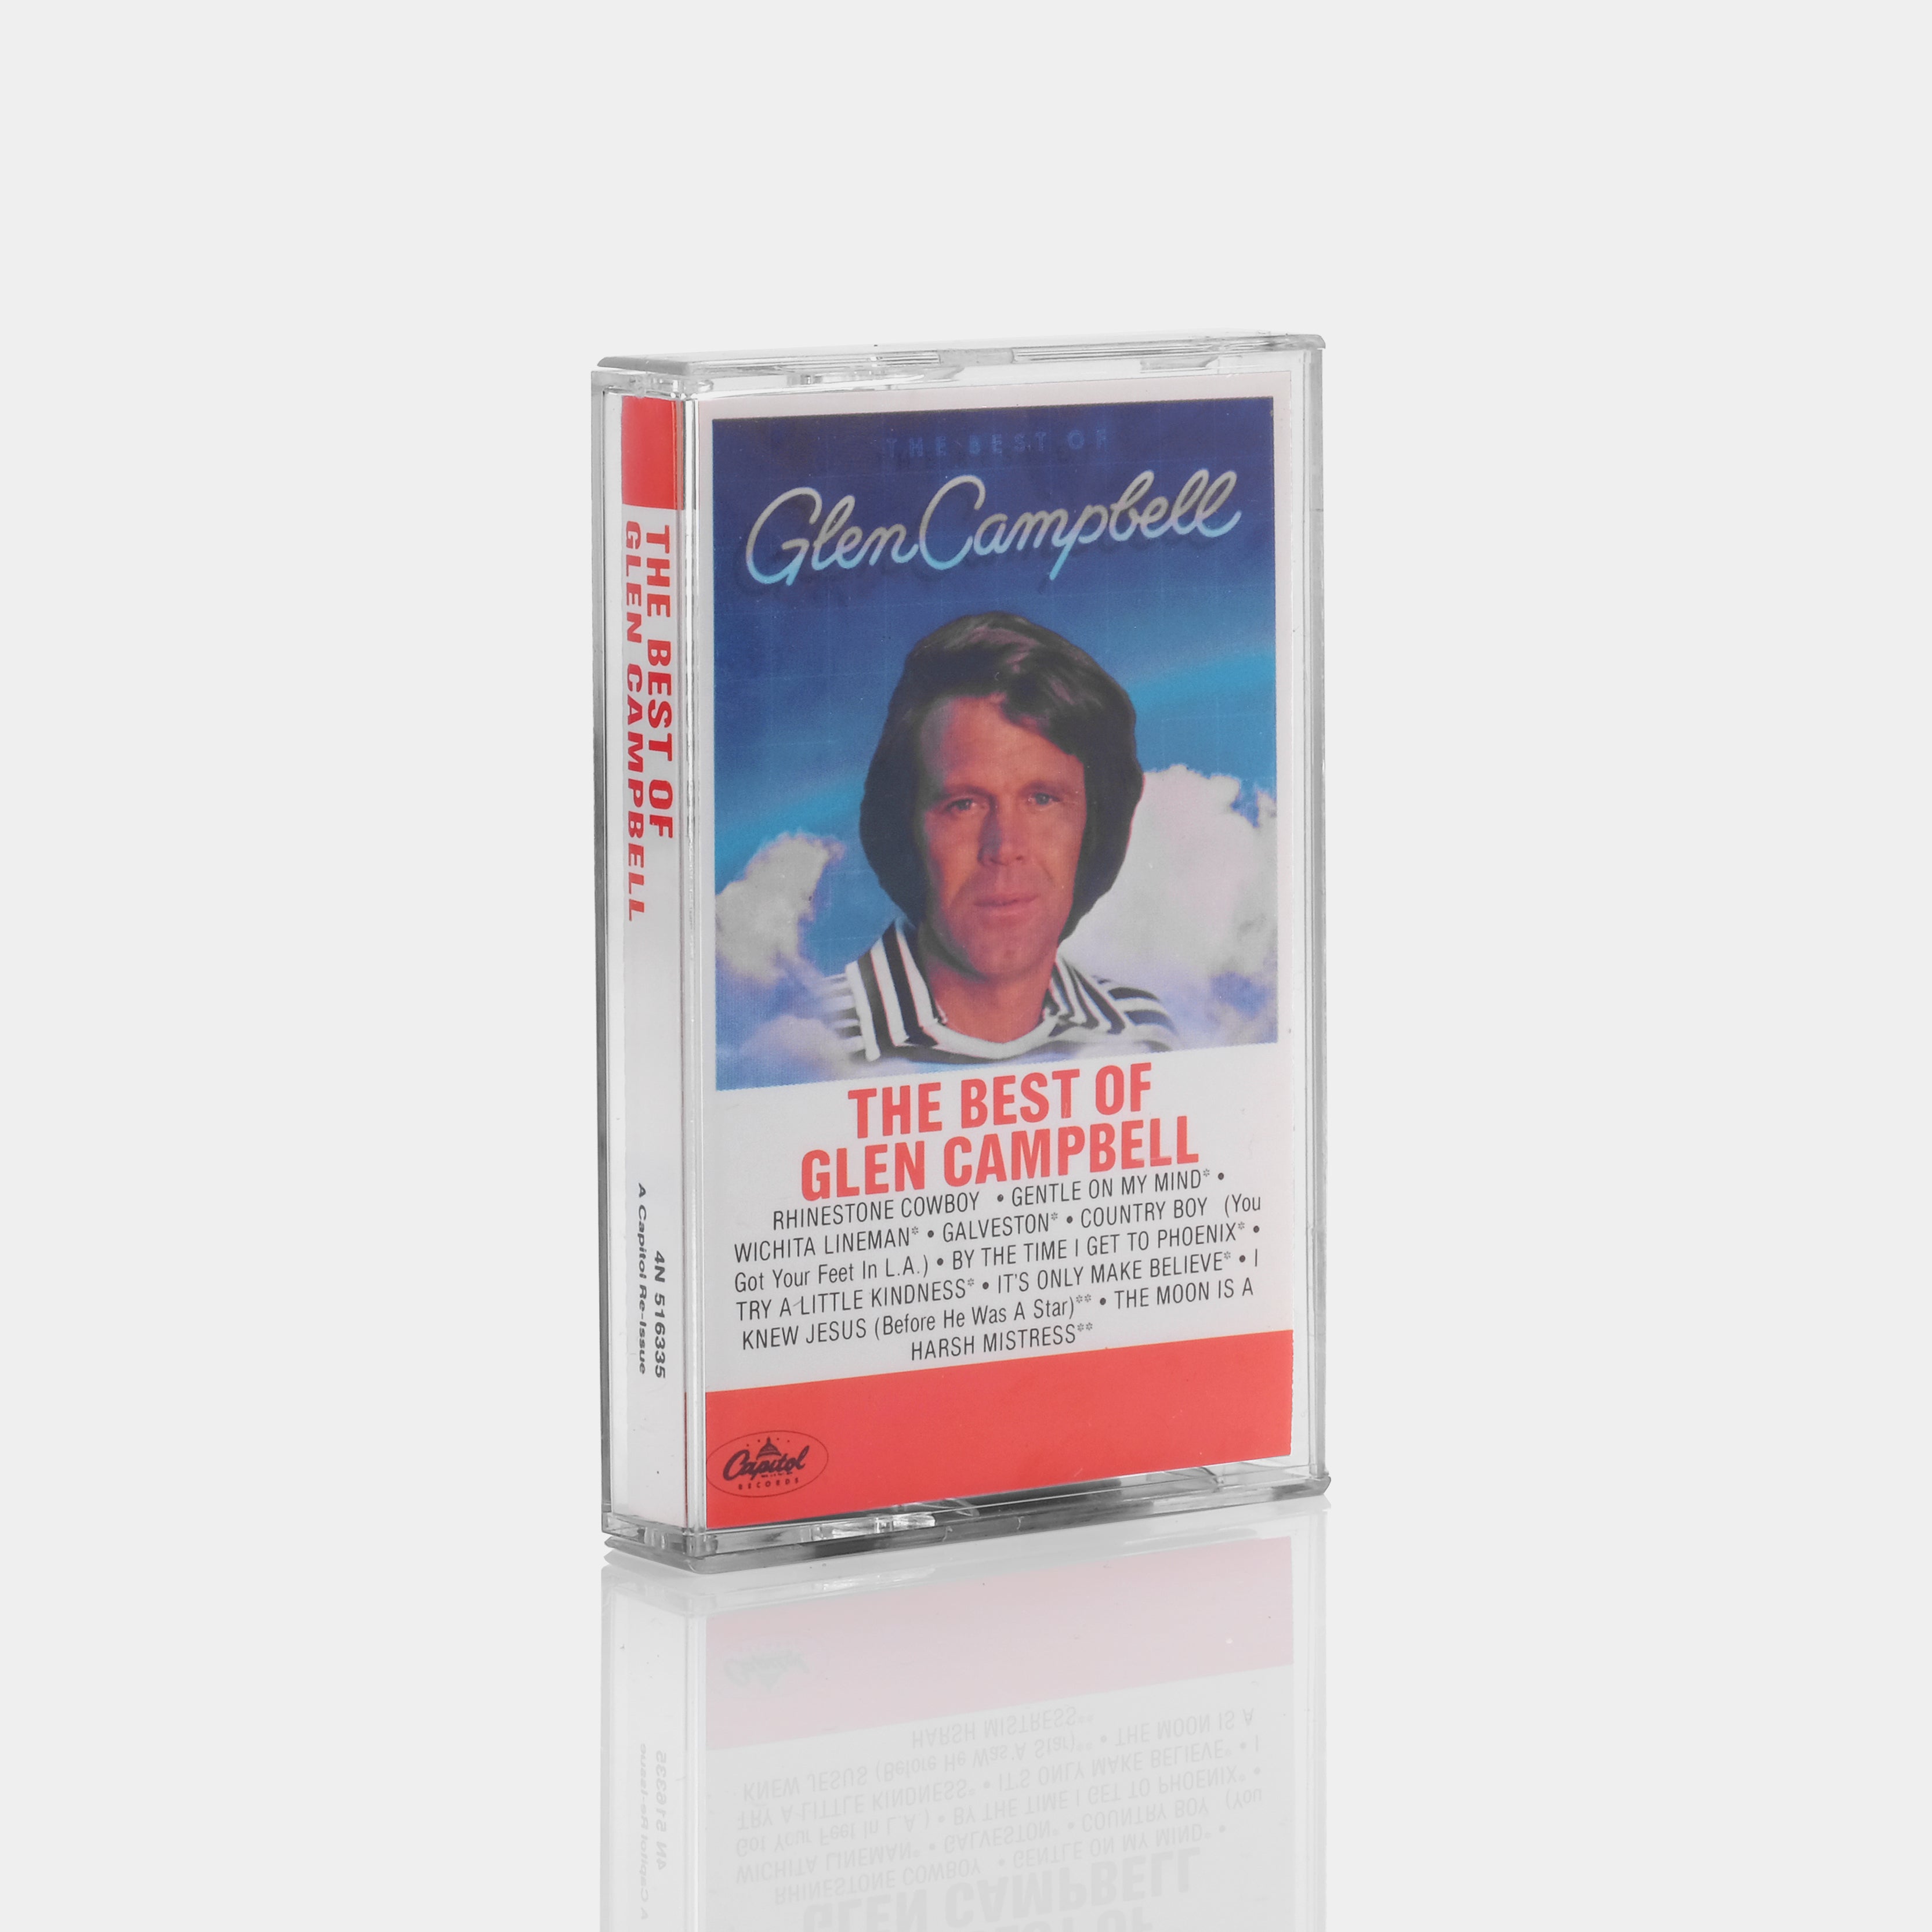 Glen Campbell - The Best Of Glen Campbell Cassette Tape